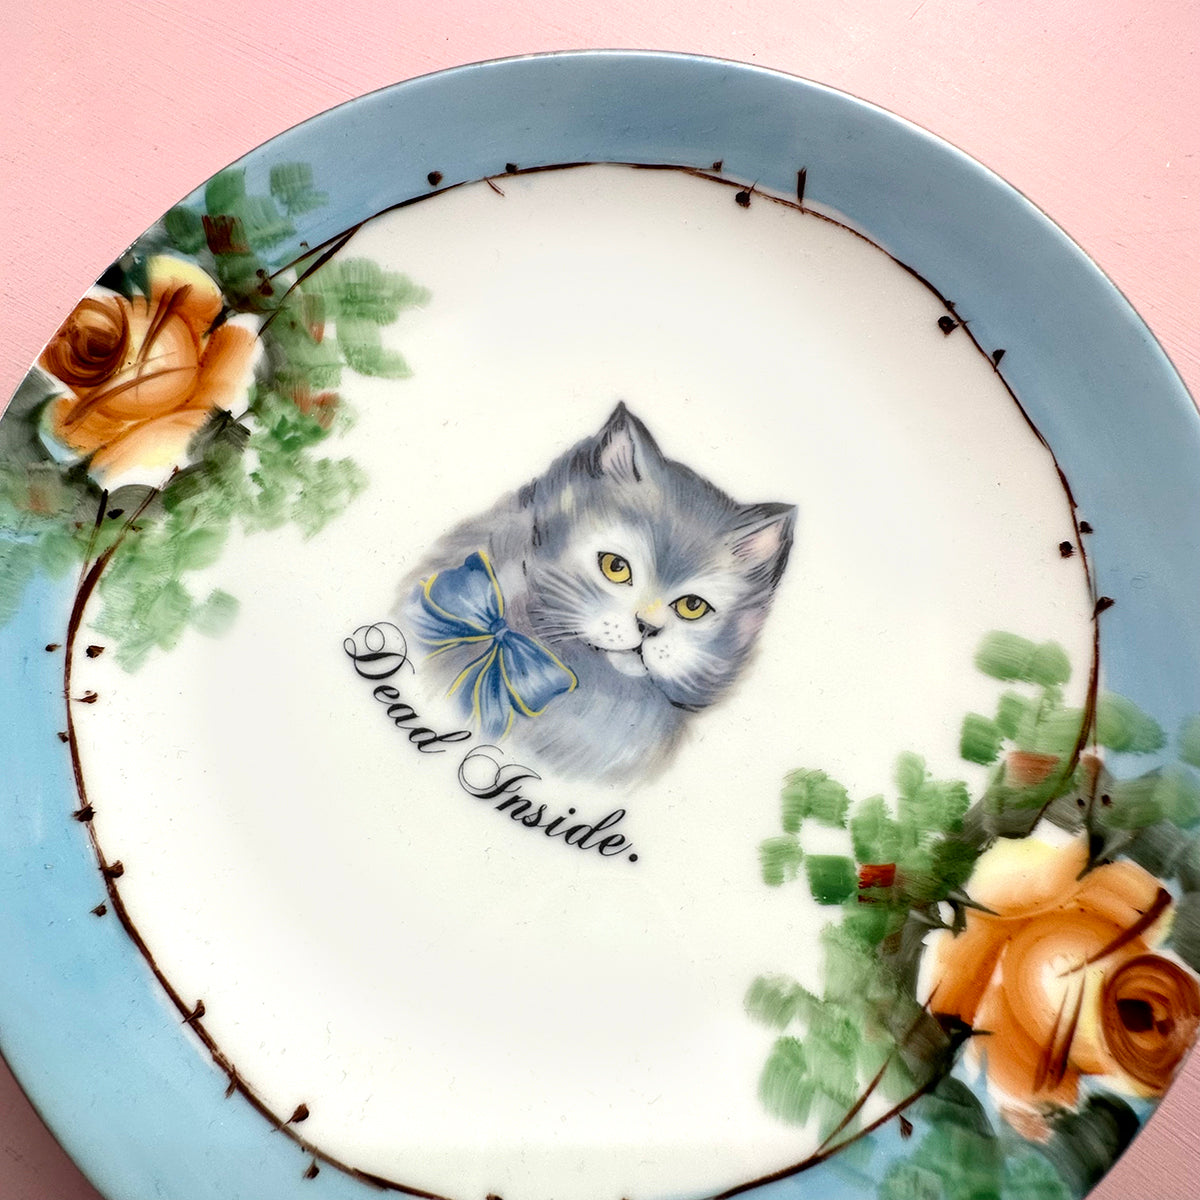 Vintage Art Plate - Cat Art Plate - "Dead Inside."